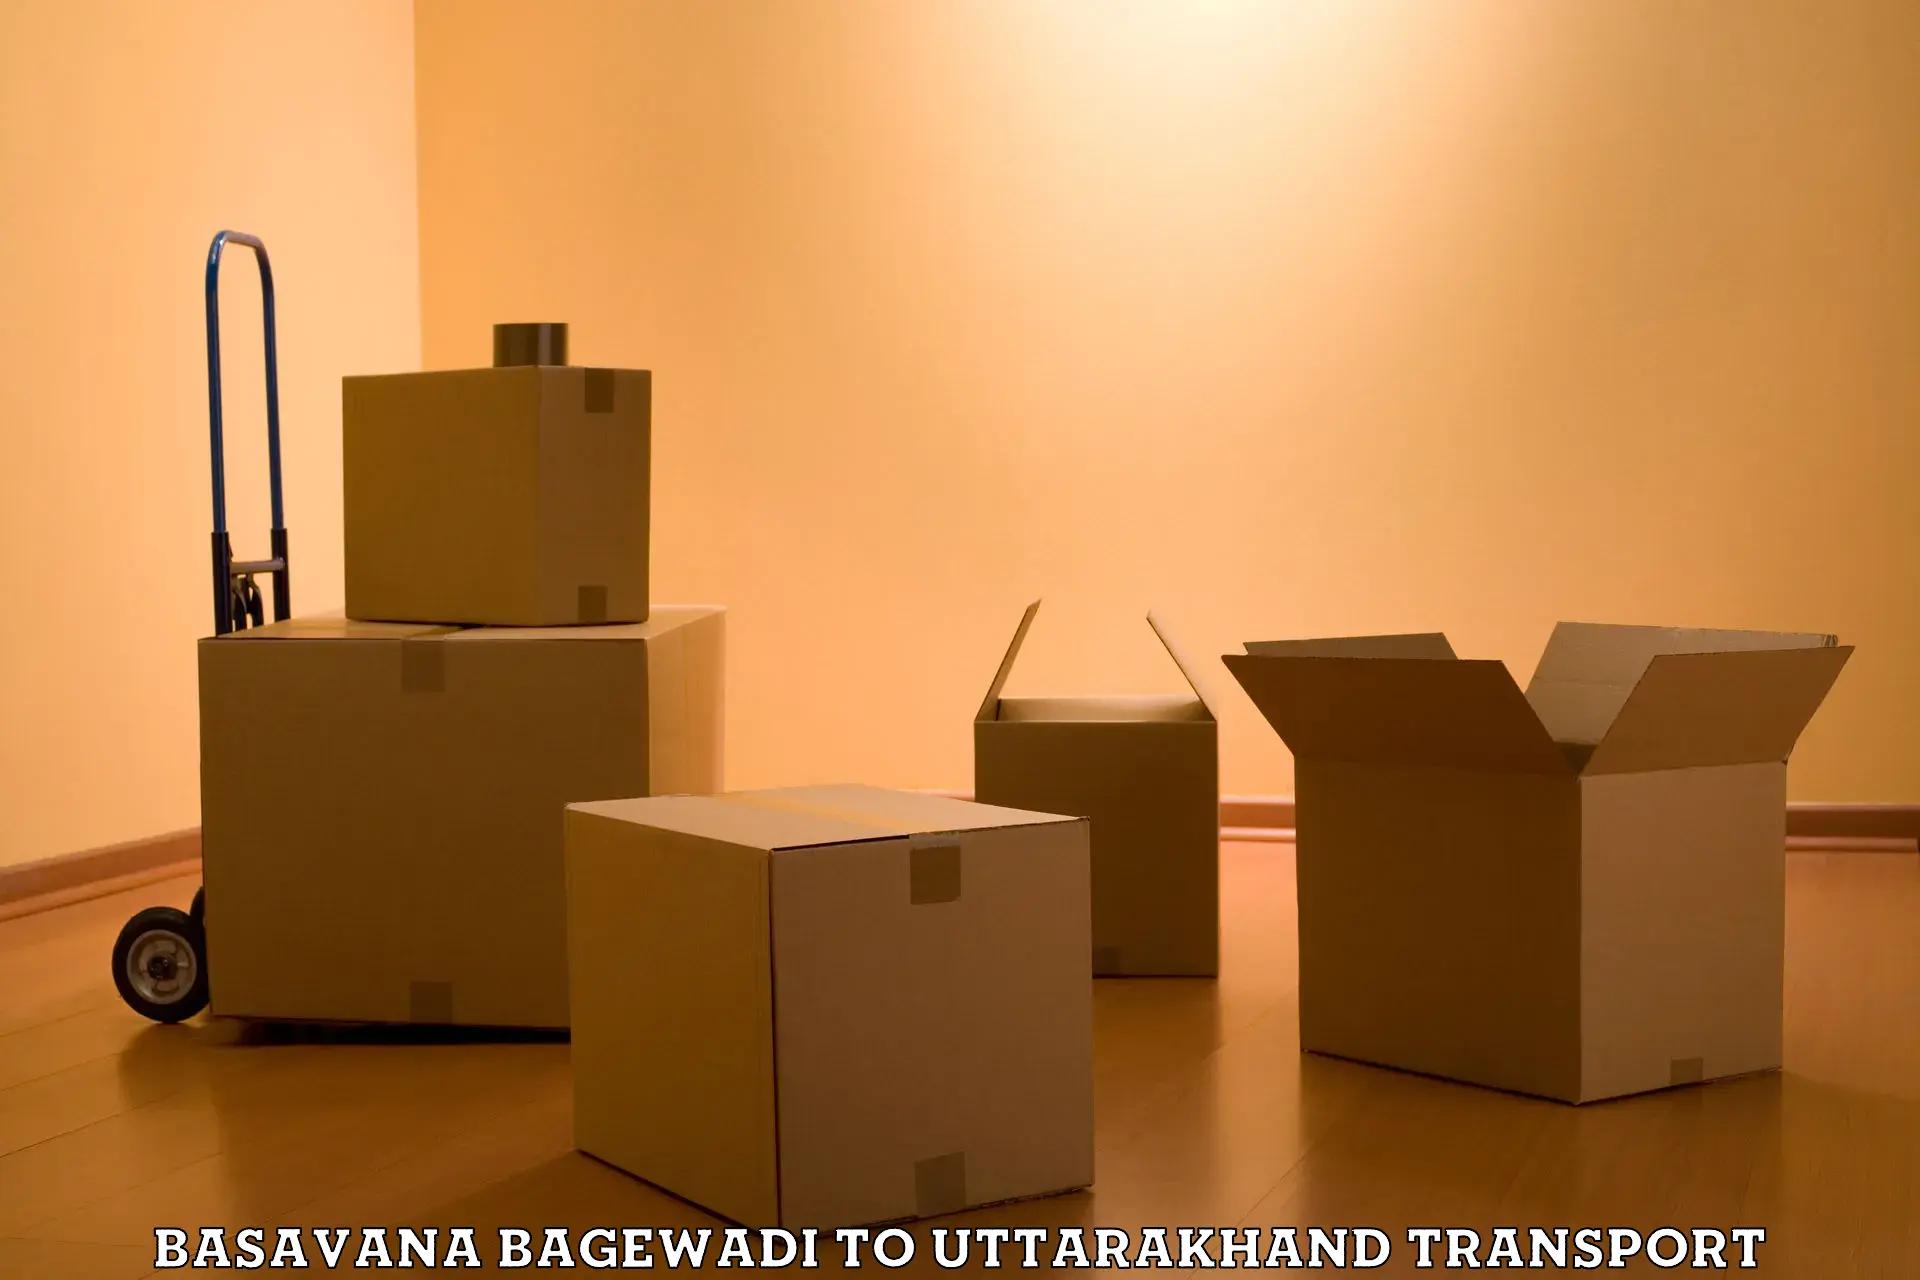 Furniture transport service Basavana Bagewadi to Pithoragarh